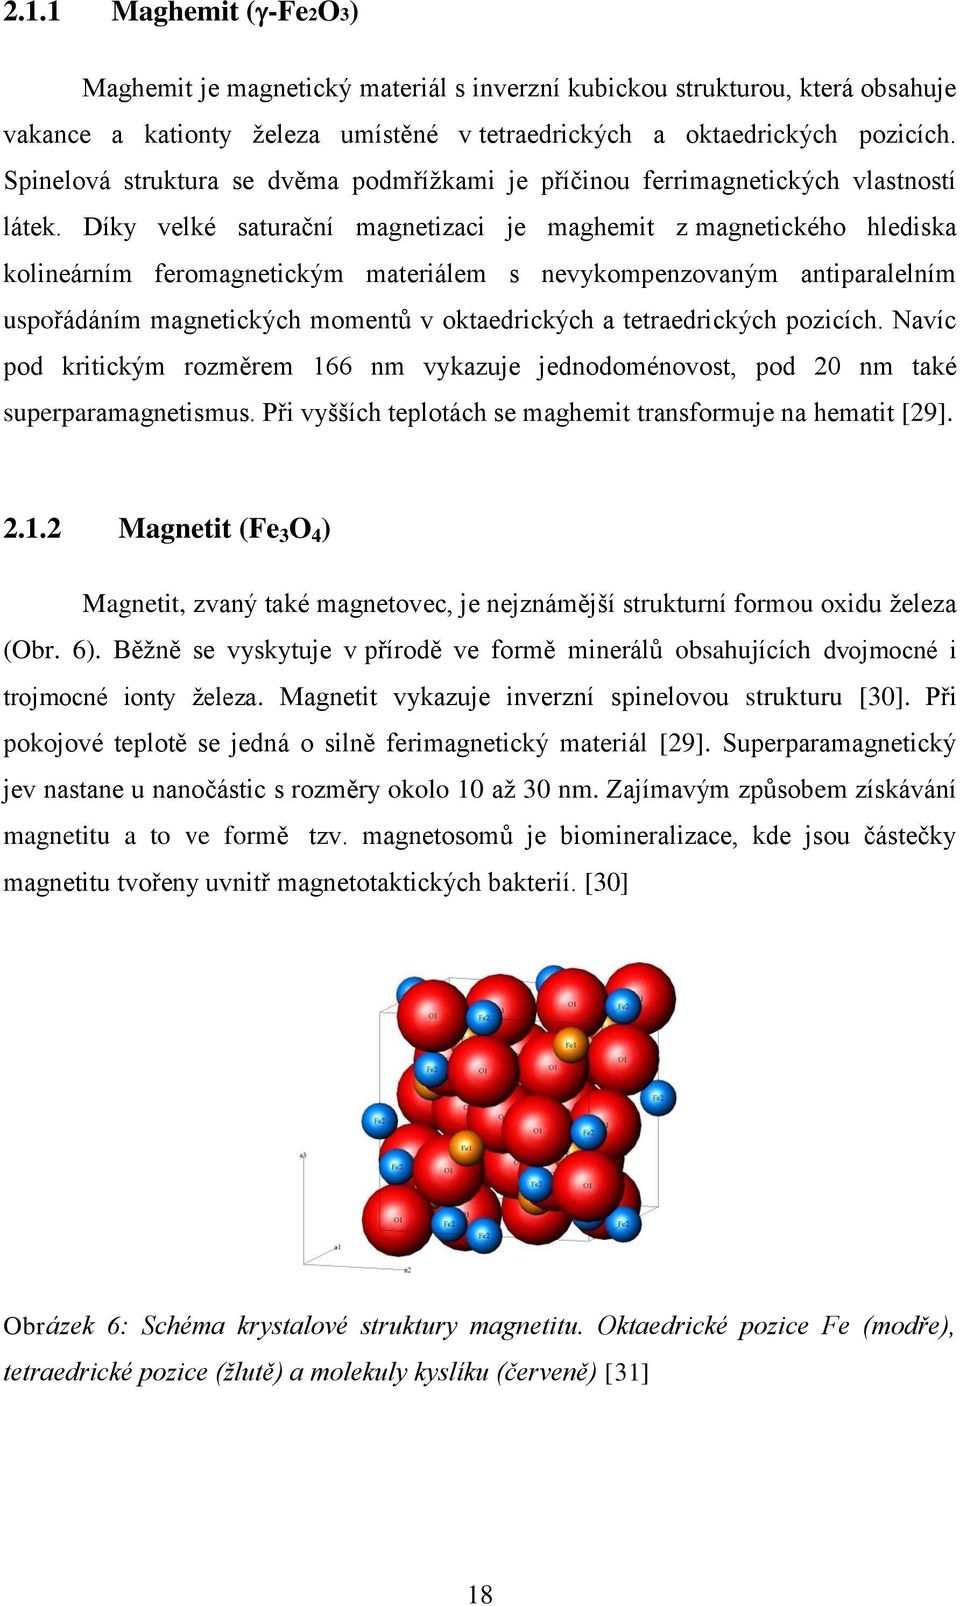 Díky velké saturační magnetizaci je maghemit z magnetického hlediska kolineárním feromagnetickým materiálem s nevykompenzovaným antiparalelním uspořádáním magnetických momentů v oktaedrických a